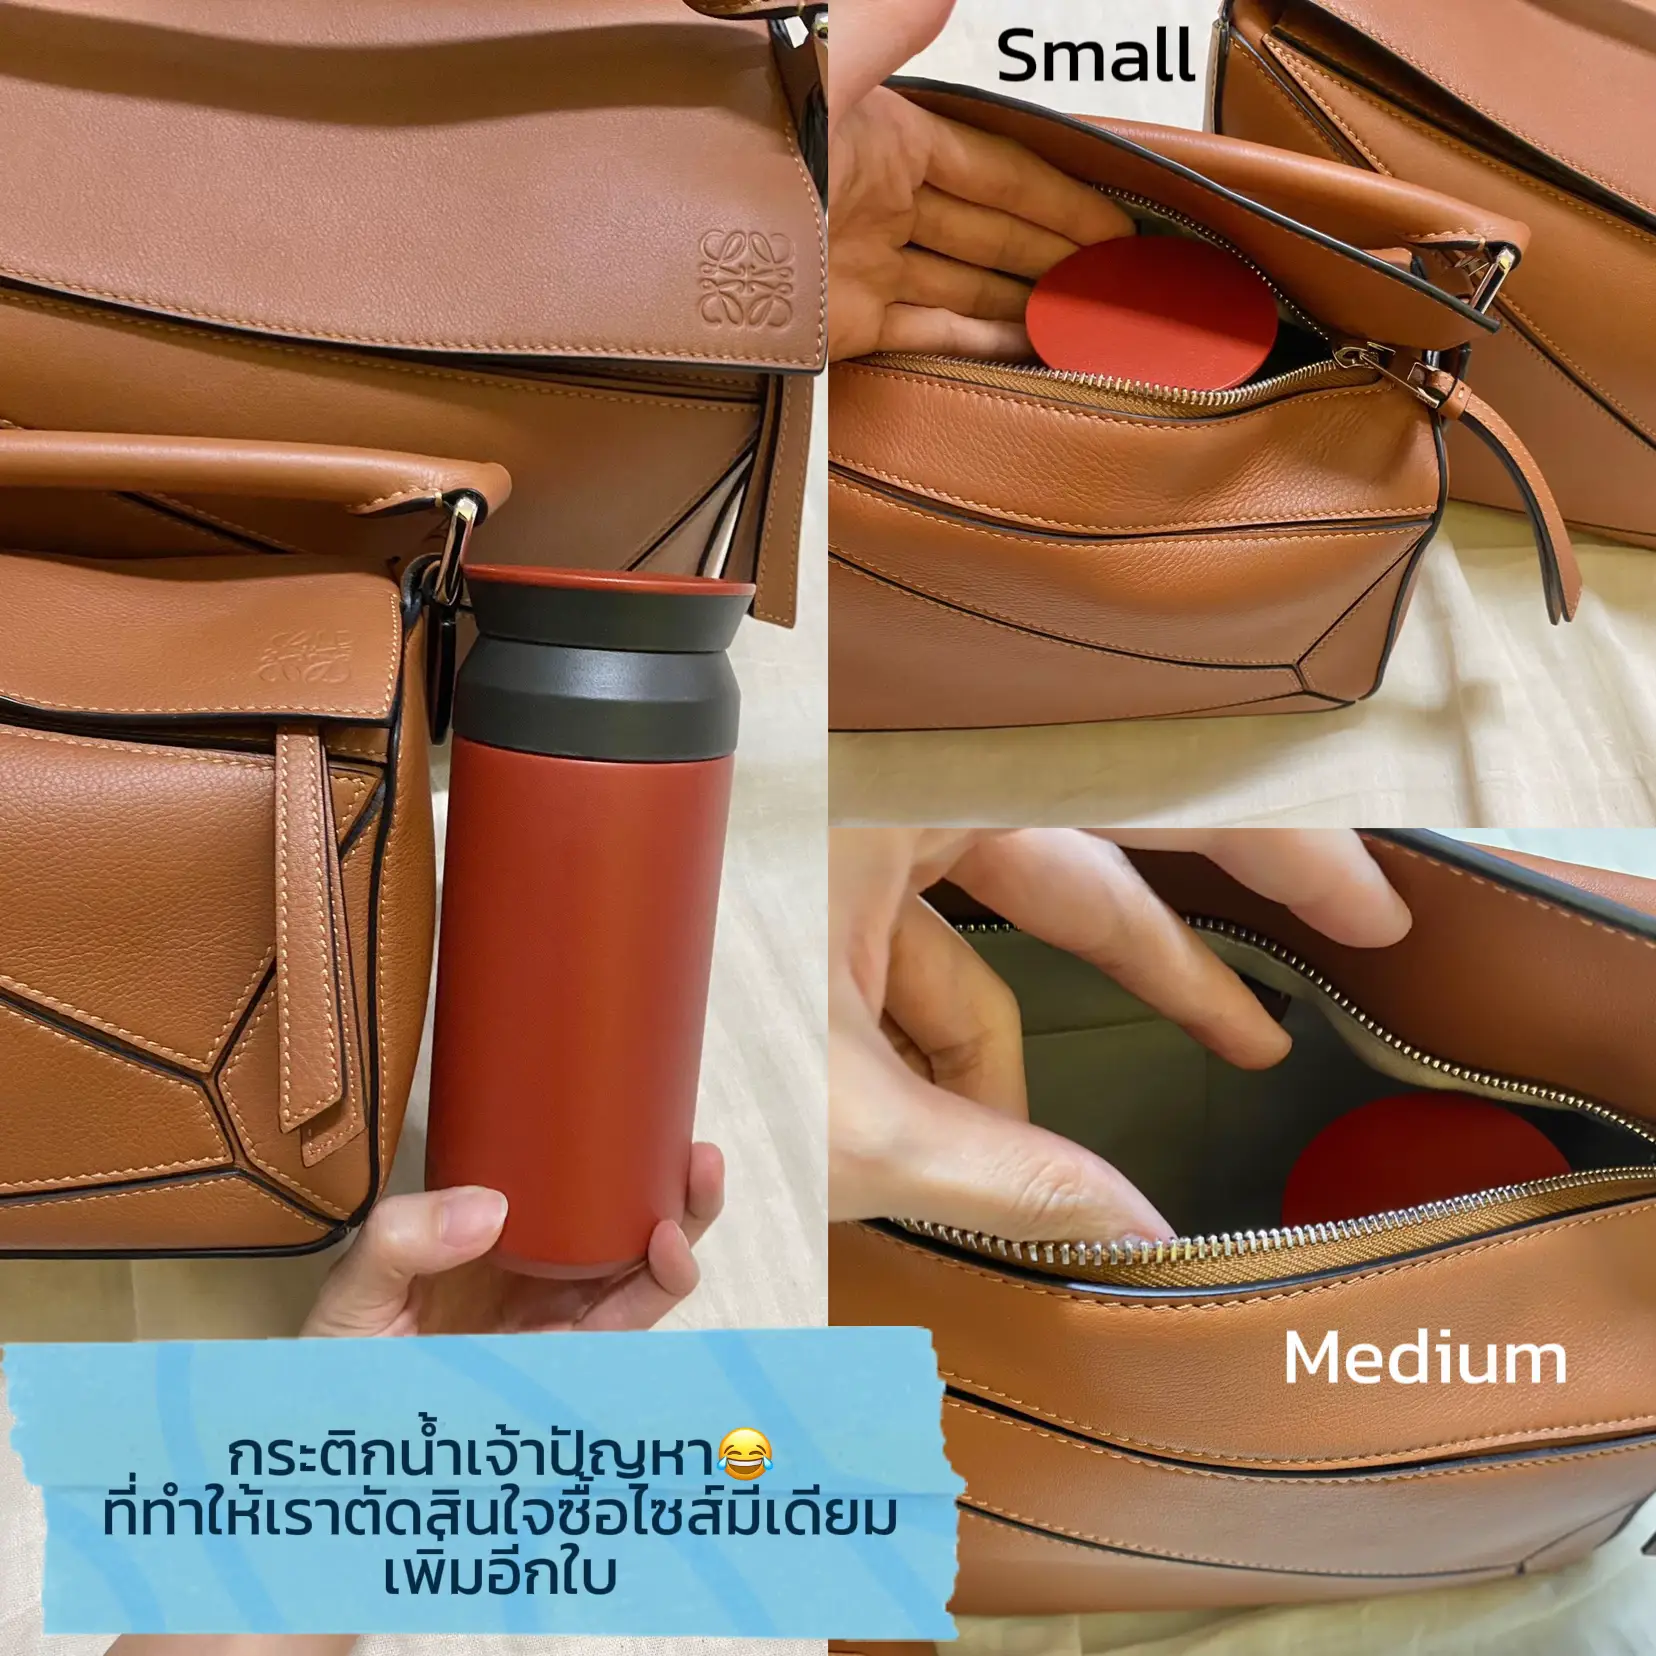 Help me pick- Loewe small puzzle! : r/handbags